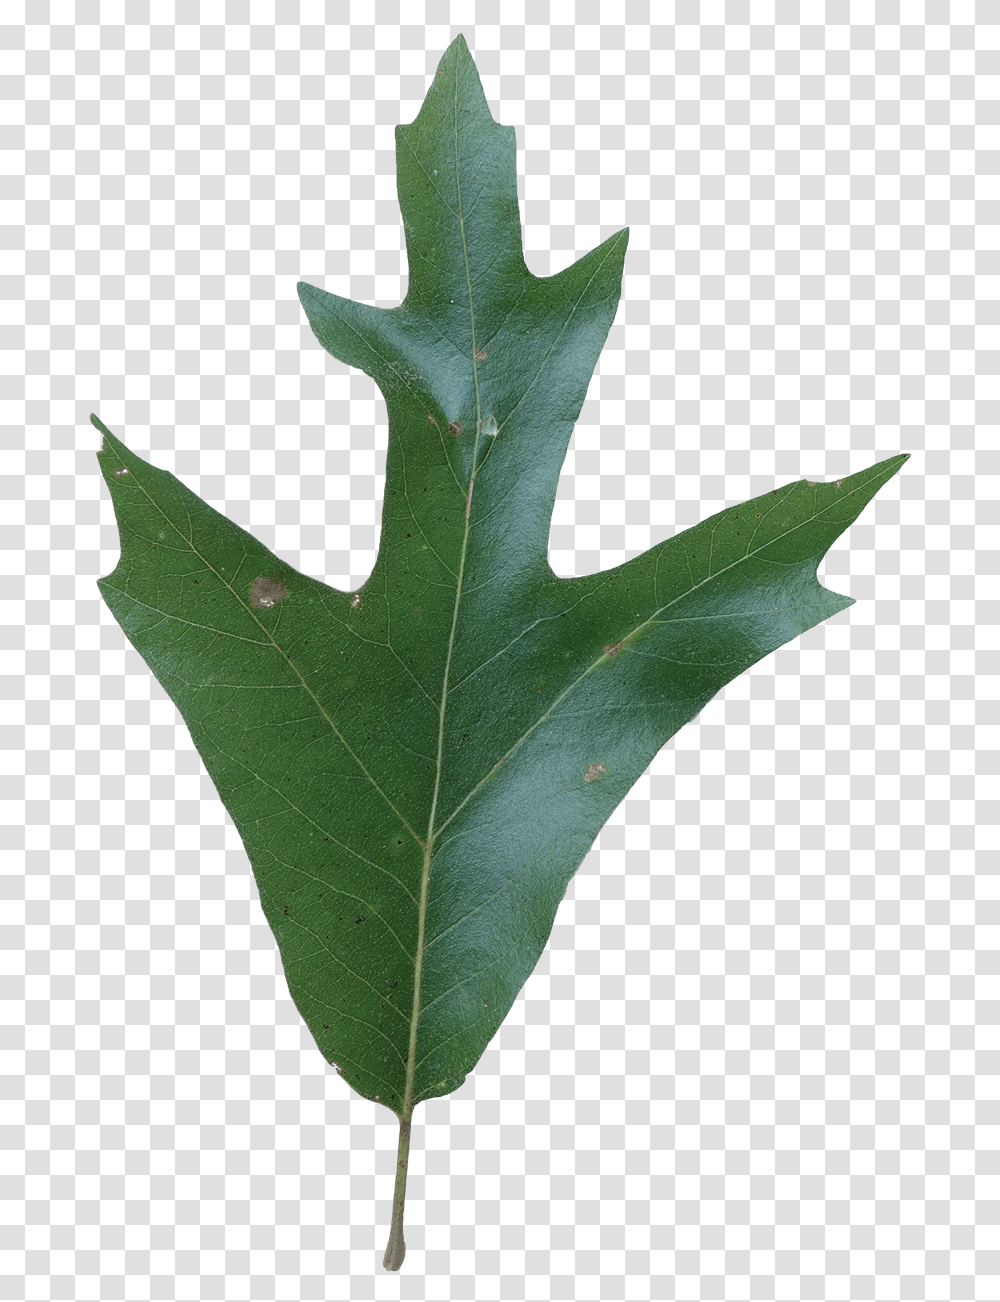 Southern Red Oak Tree Leaves, Leaf, Plant, Maple Leaf Transparent Png